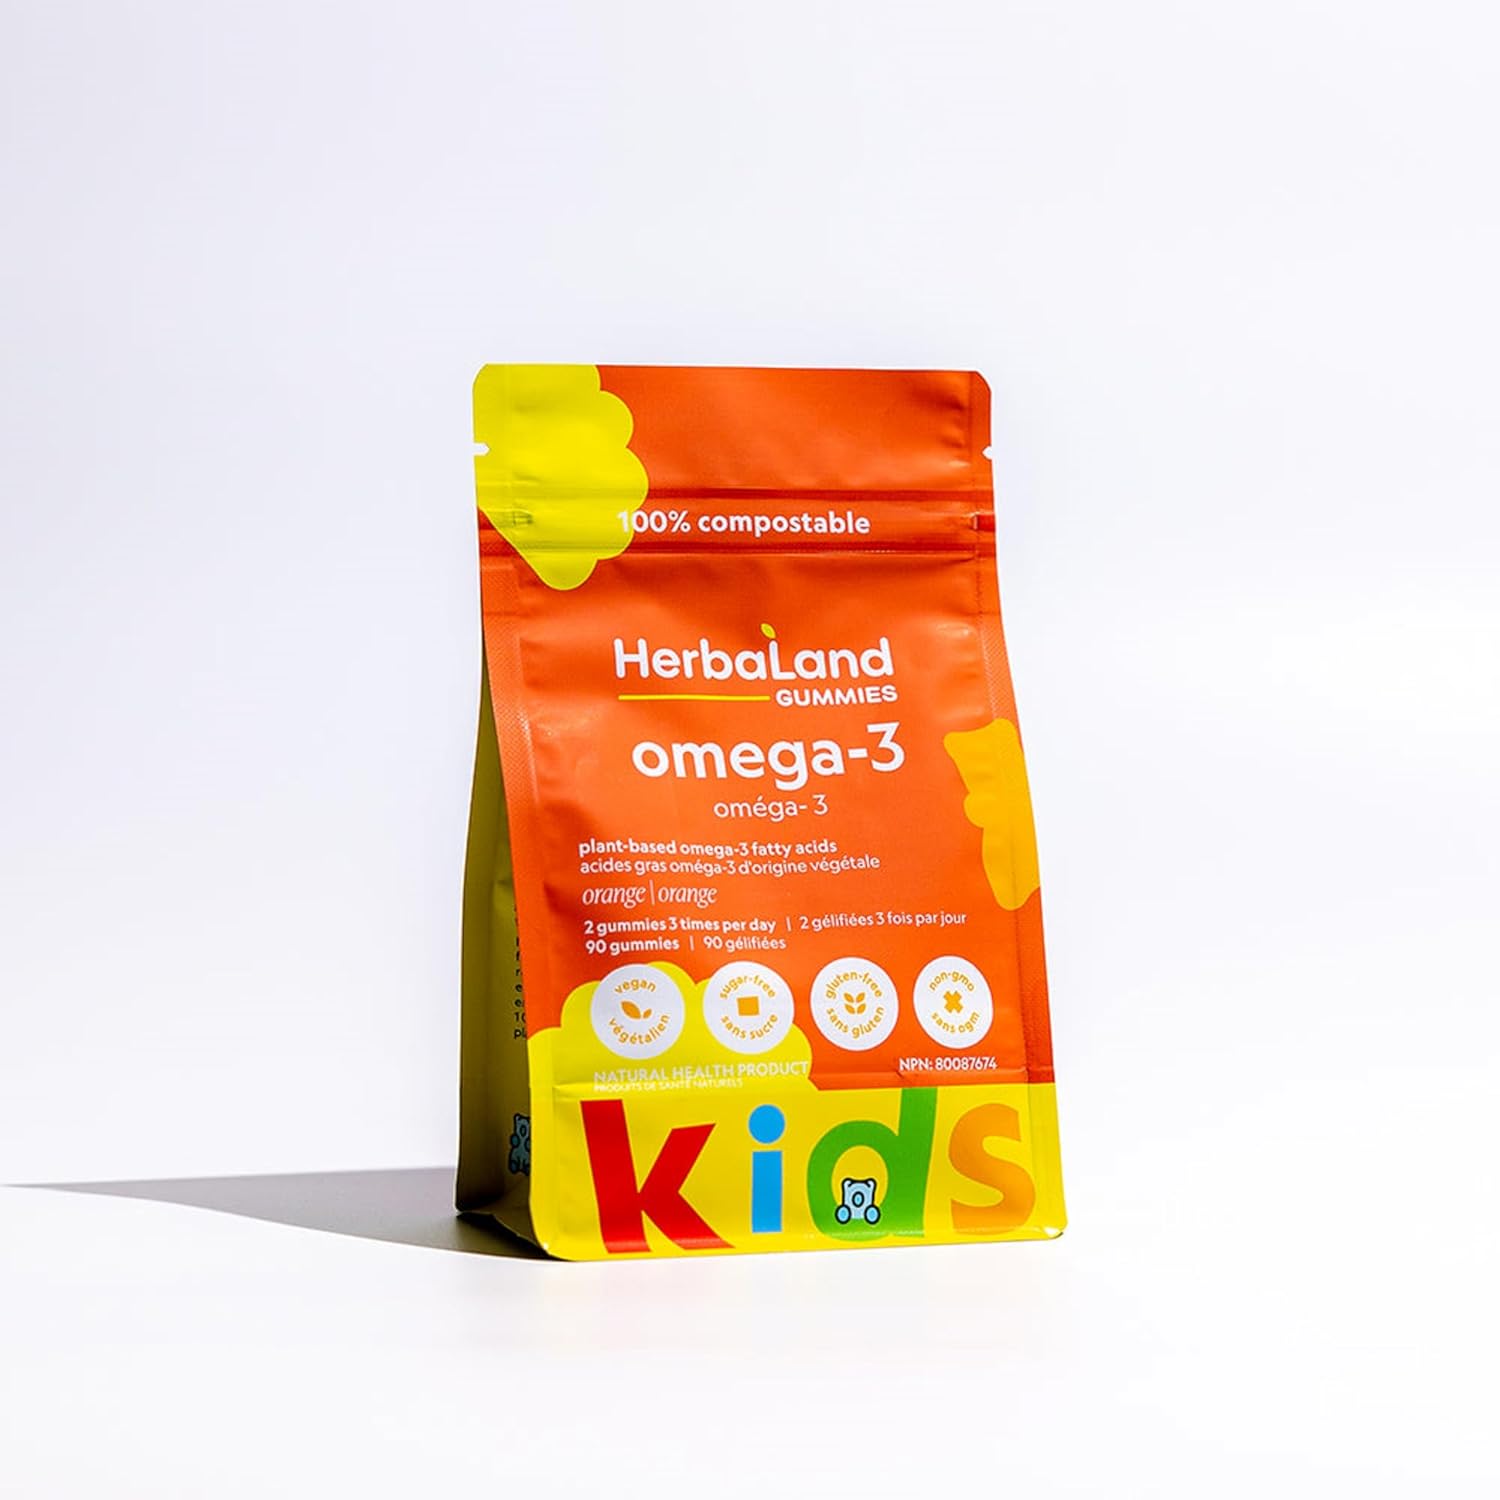 Herbaland Vegan Omega-3 Gummies for Kids - Sugar-Free & Gluten-Free, P